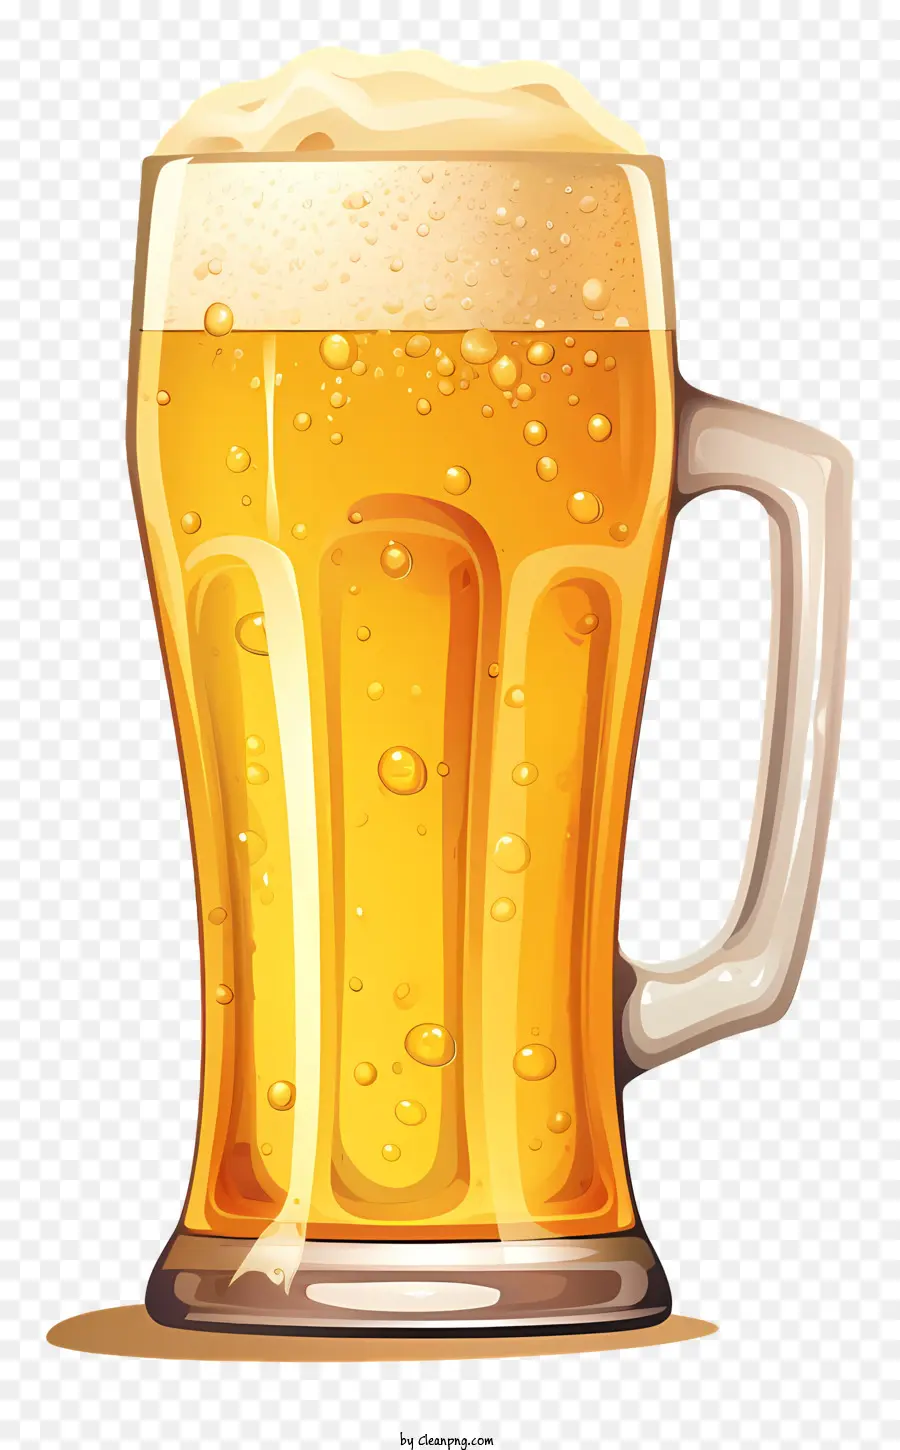 bia thủy tinh bia vàng bia bong bóng bọt chứa chất lỏng - Hình ảnh của ly bia đầy đủ với bọt vàng